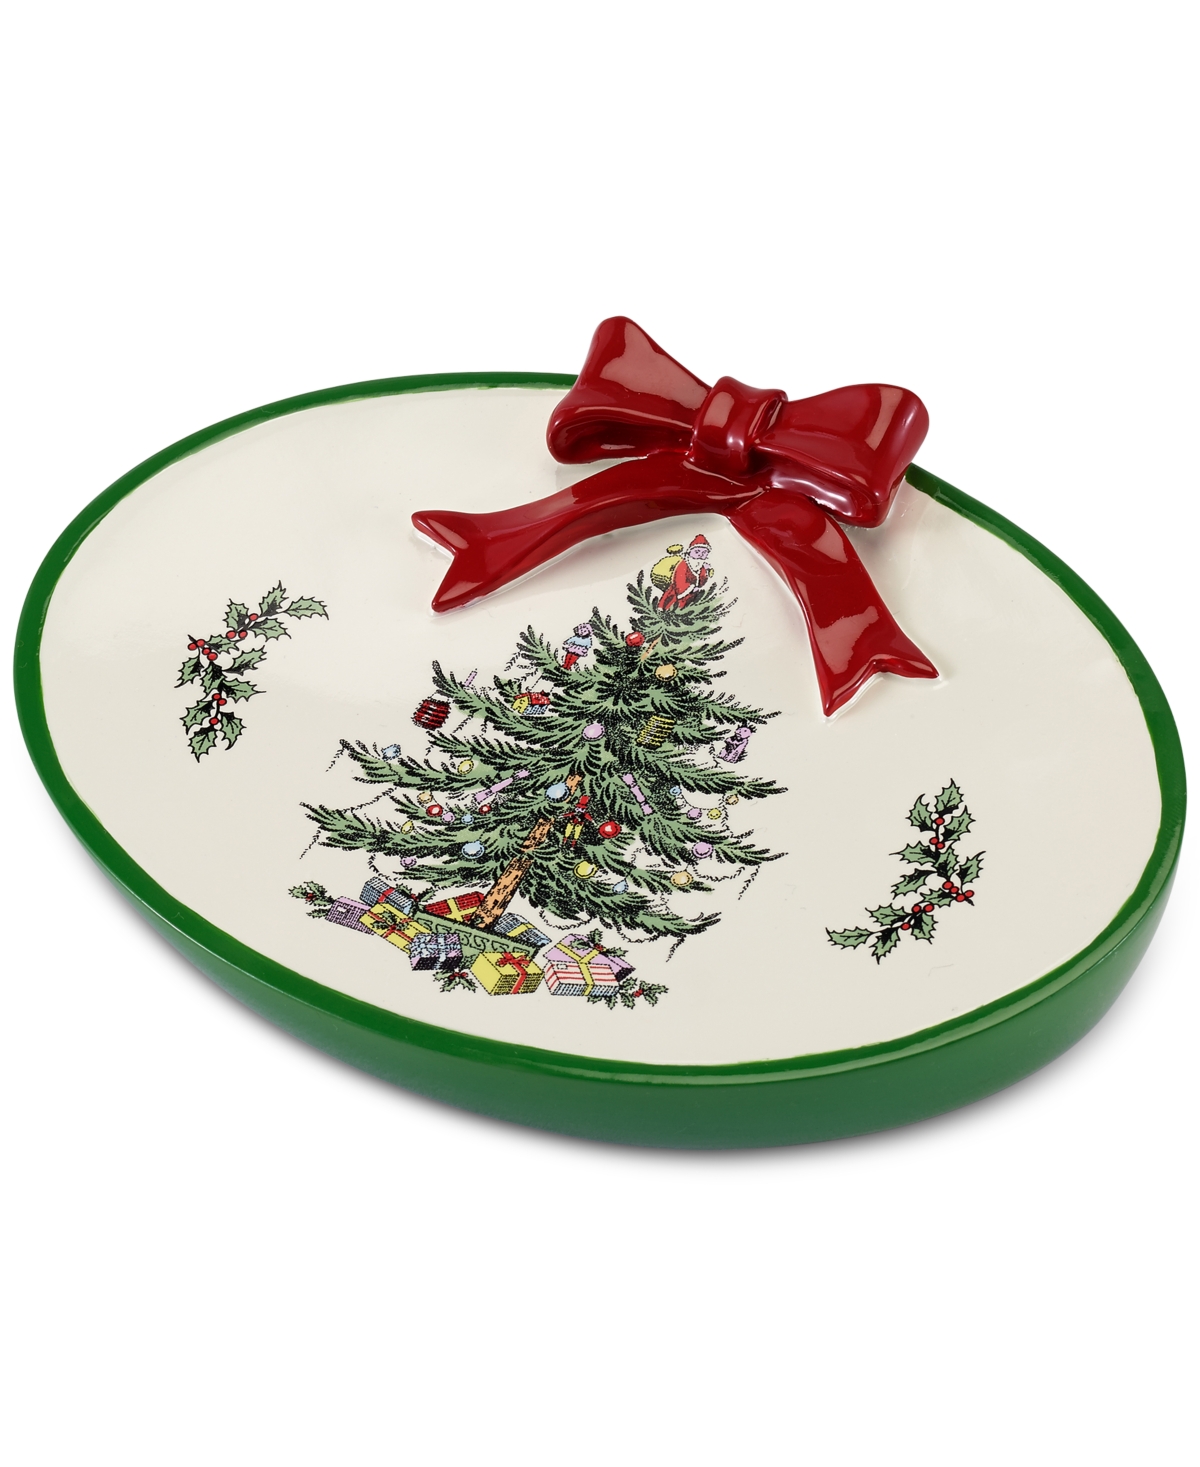 Christmas Tree Soap Dish - Soap Dish